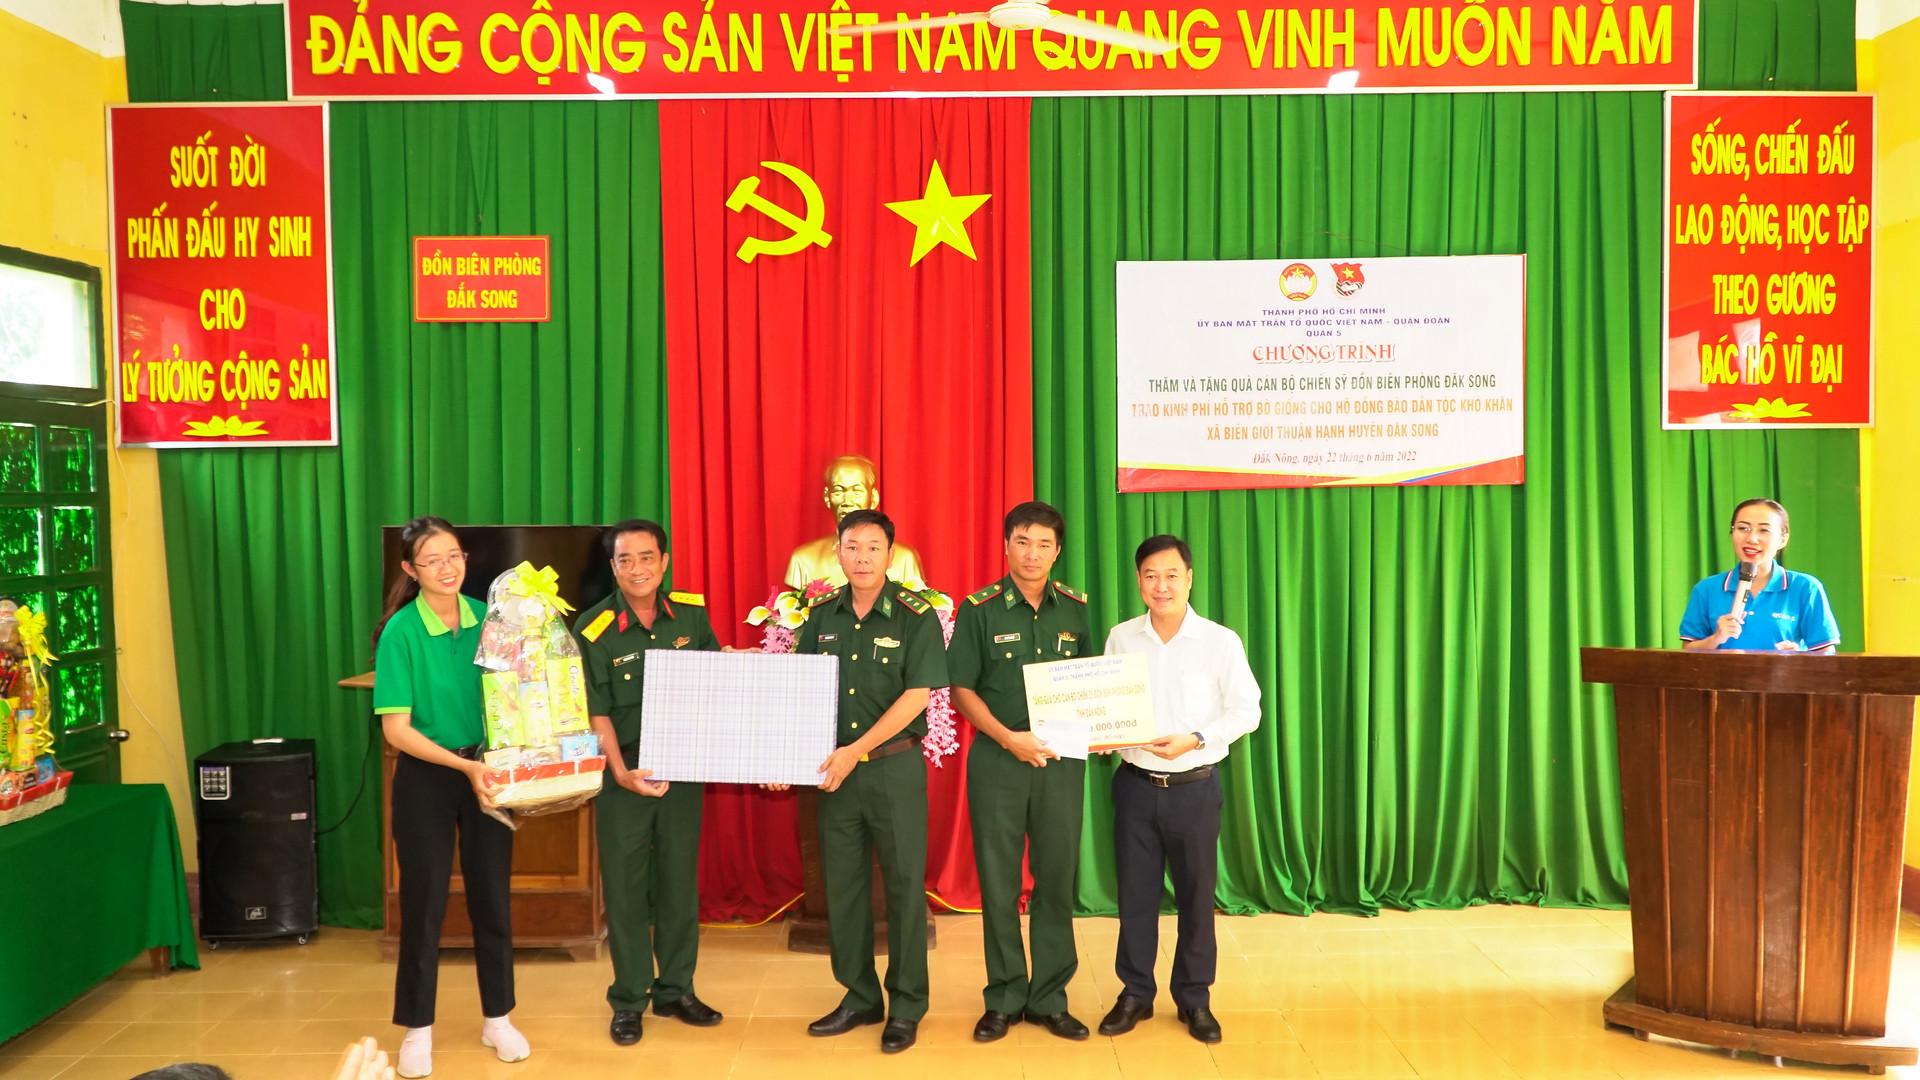 Uỷ ban MTTQ Việt Nam quận 5 đến thăm và trao tặng quà cho cán bộ chiến sĩ Đồn biên phòng Đắk Song.